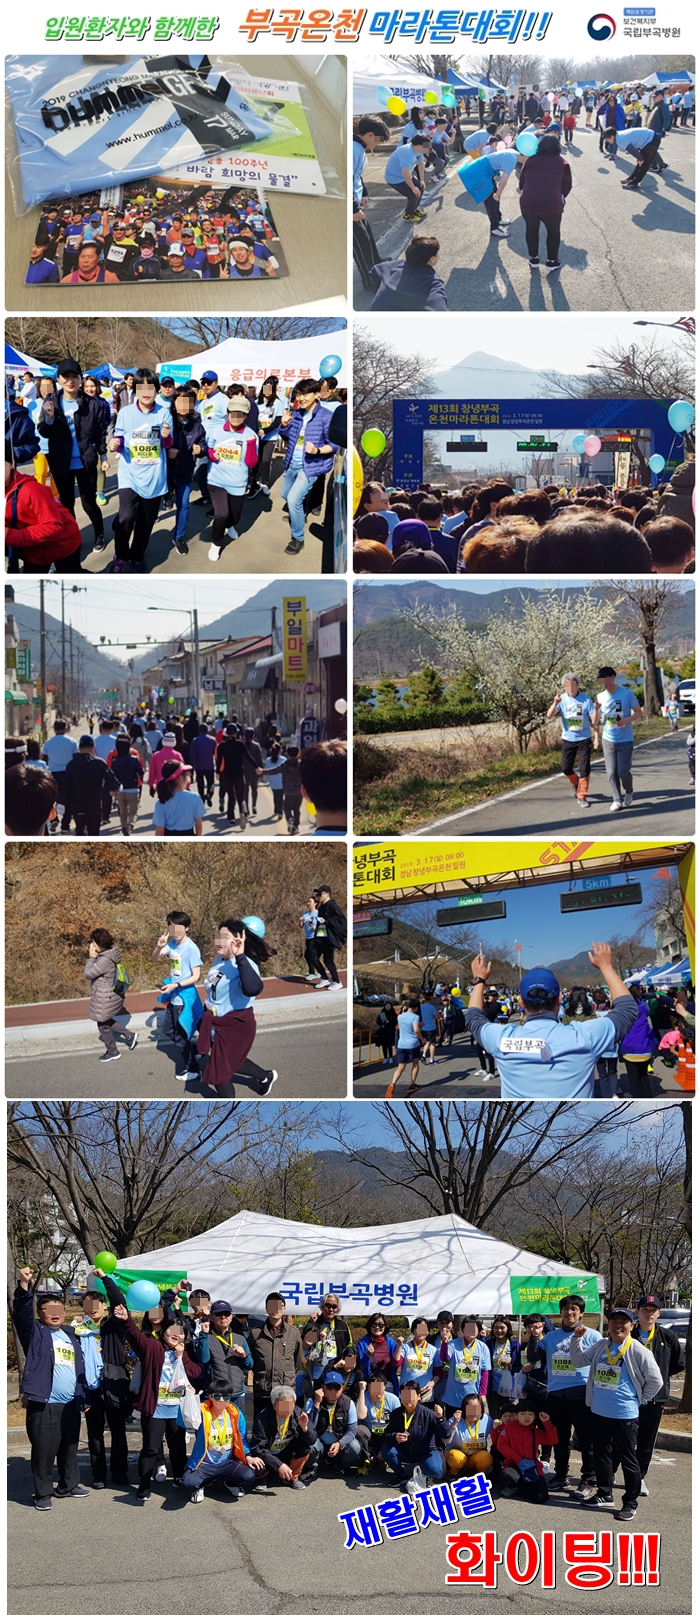 입원환자와 함께한 부곡온천 마라톤대회!!, 마라톤 참가 모습